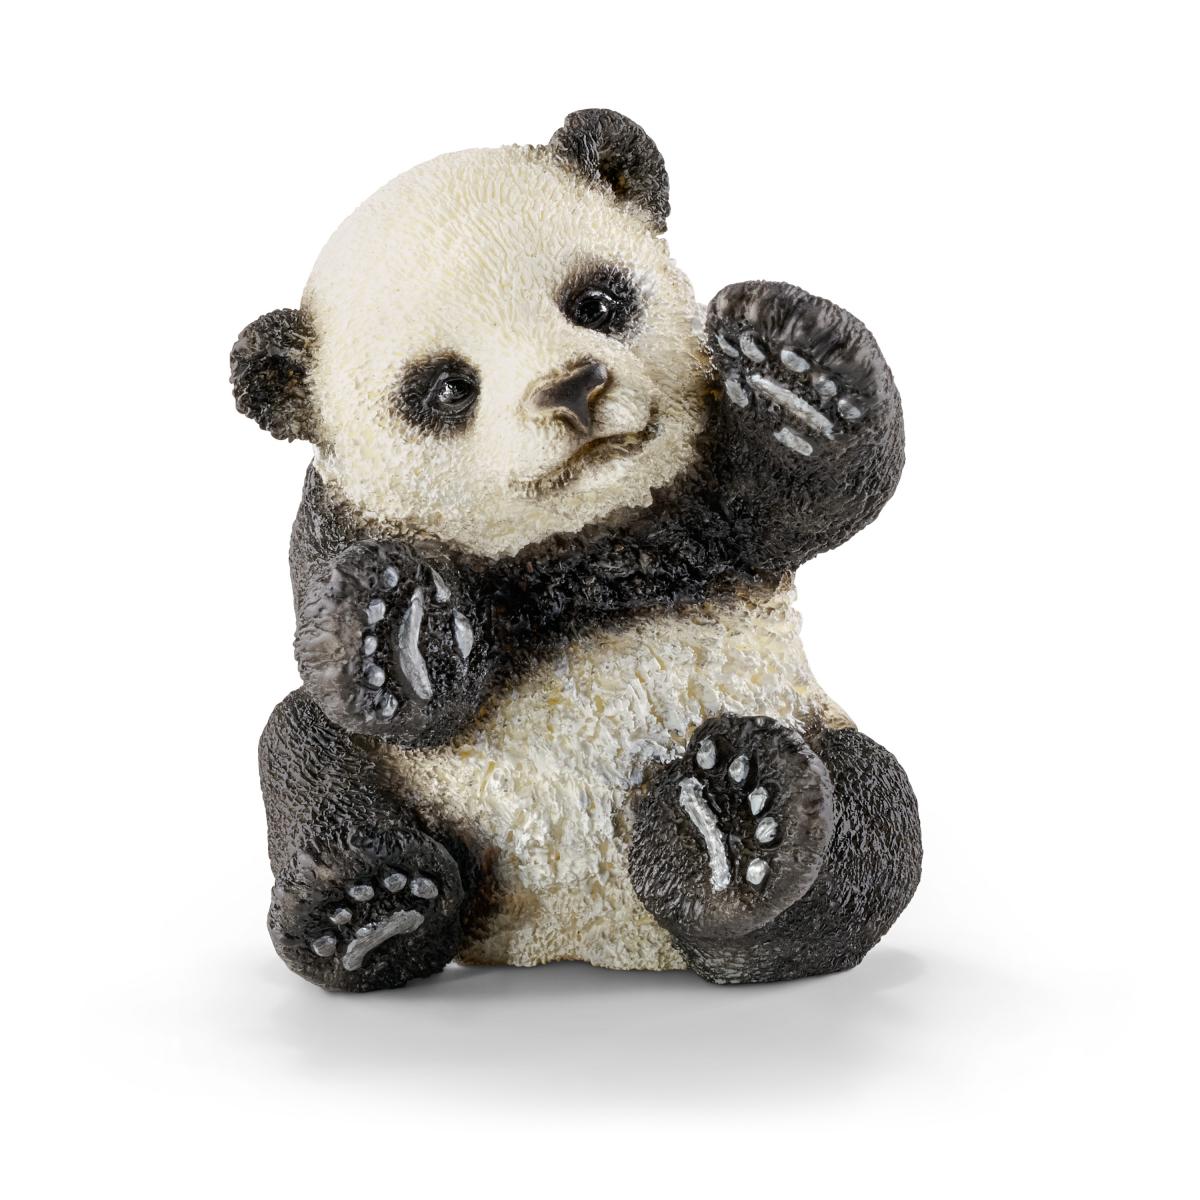 Panda Cub Playing 2" Figure